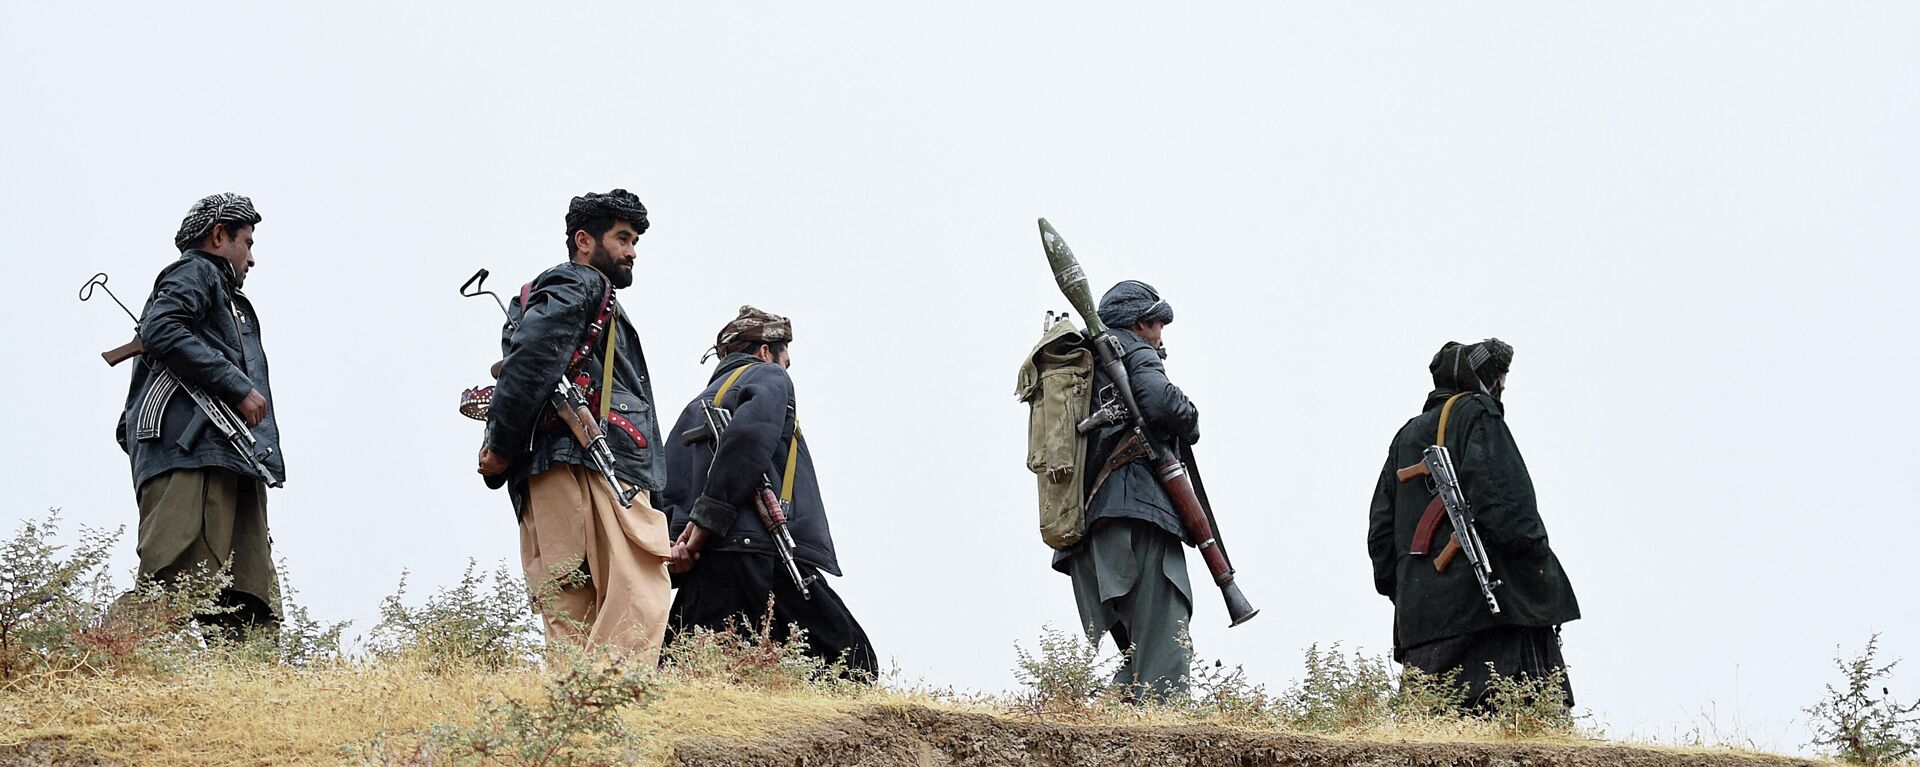 Вооруженные люди в Афганистане - Sputnik Ўзбекистон, 1920, 22.07.2021